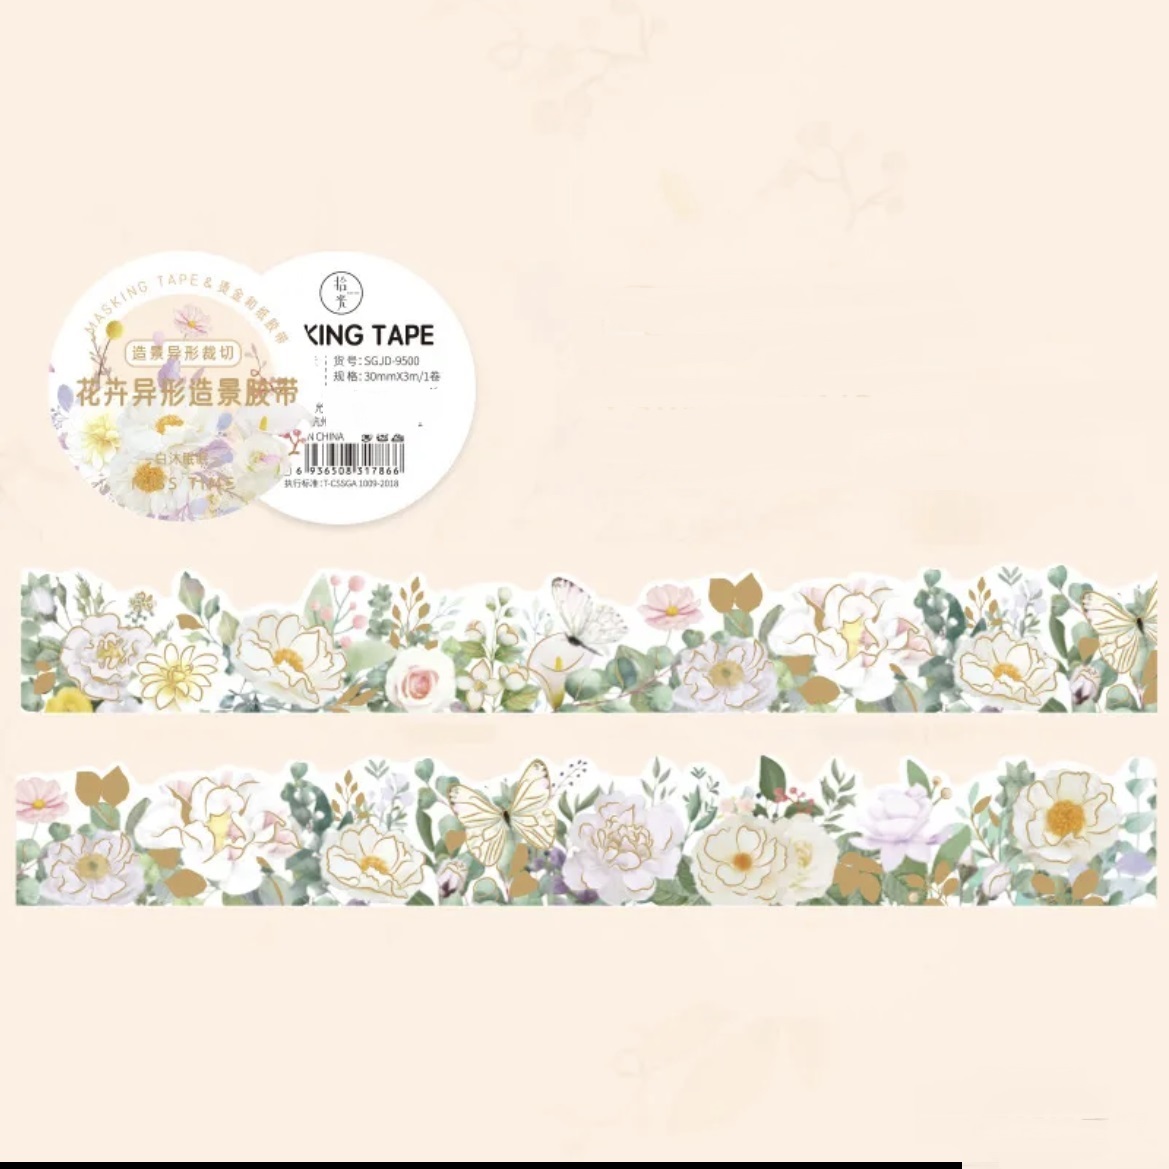 【特別注文】0070359 ロール 春シリーズ風景の花